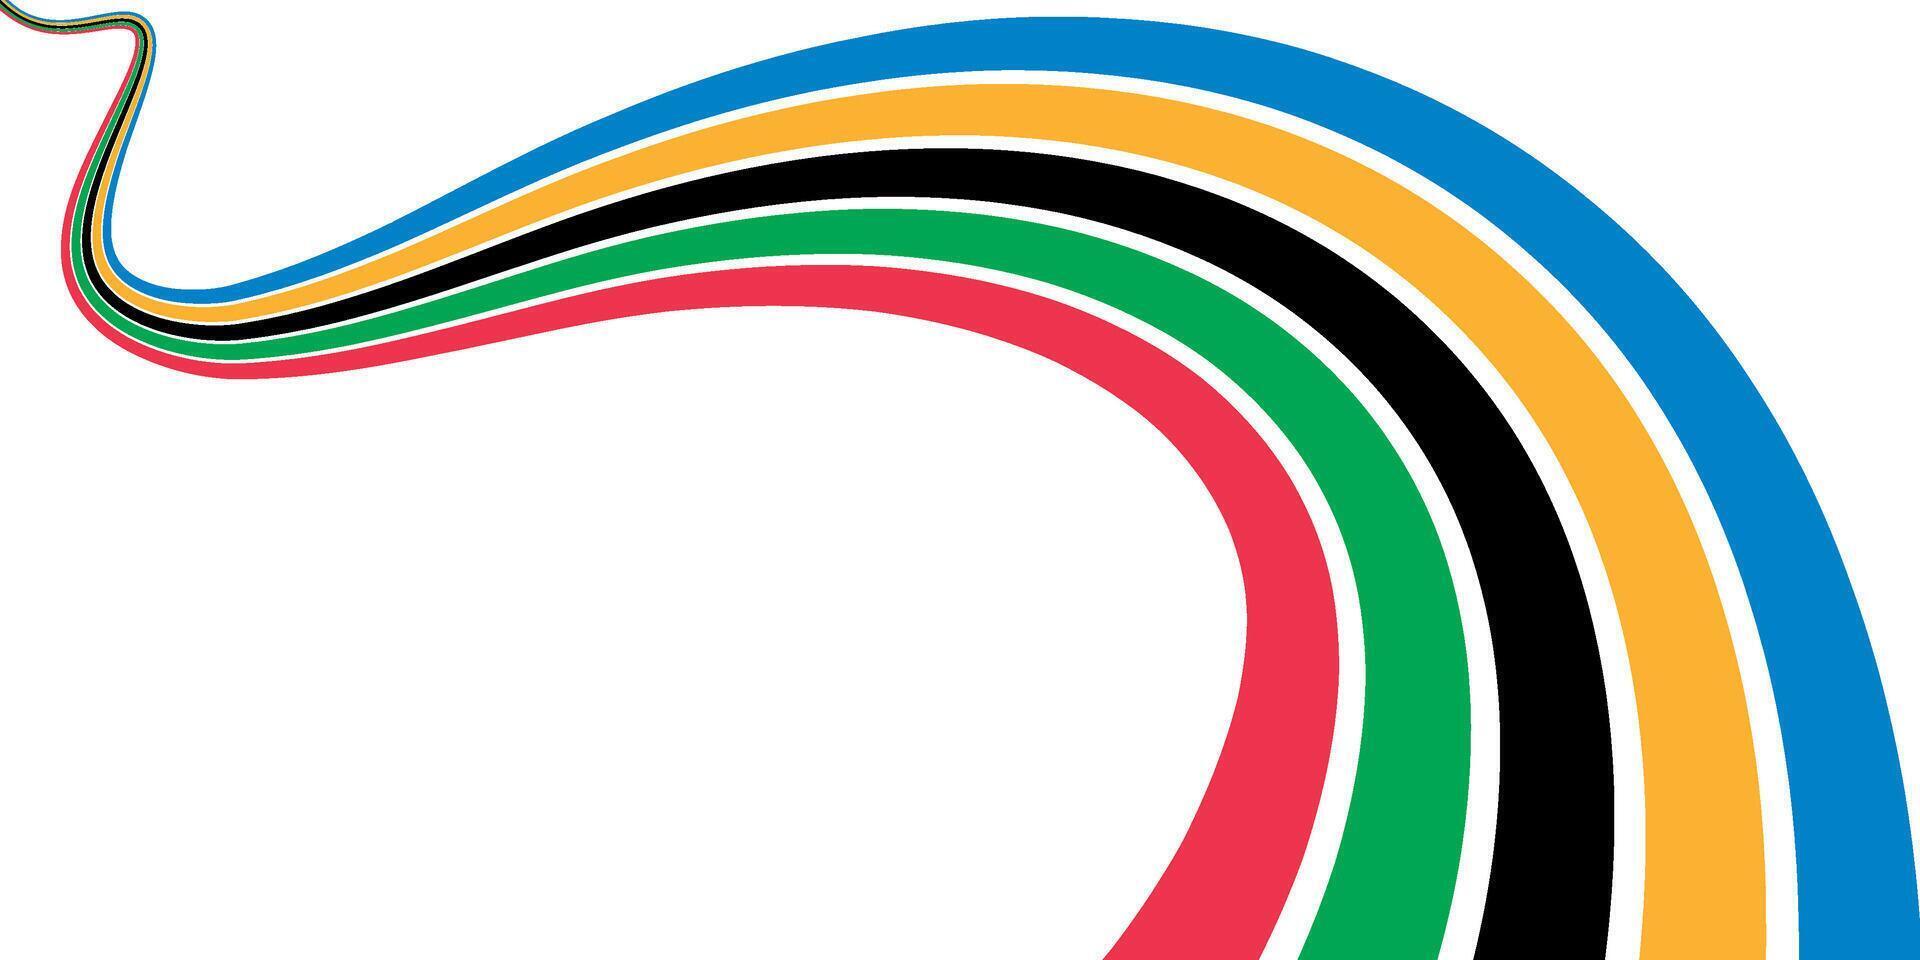 färgad lindning Ränder av de olympic spel, isolerat på en vit bakgrund. olympic spel baner. illustration vektor